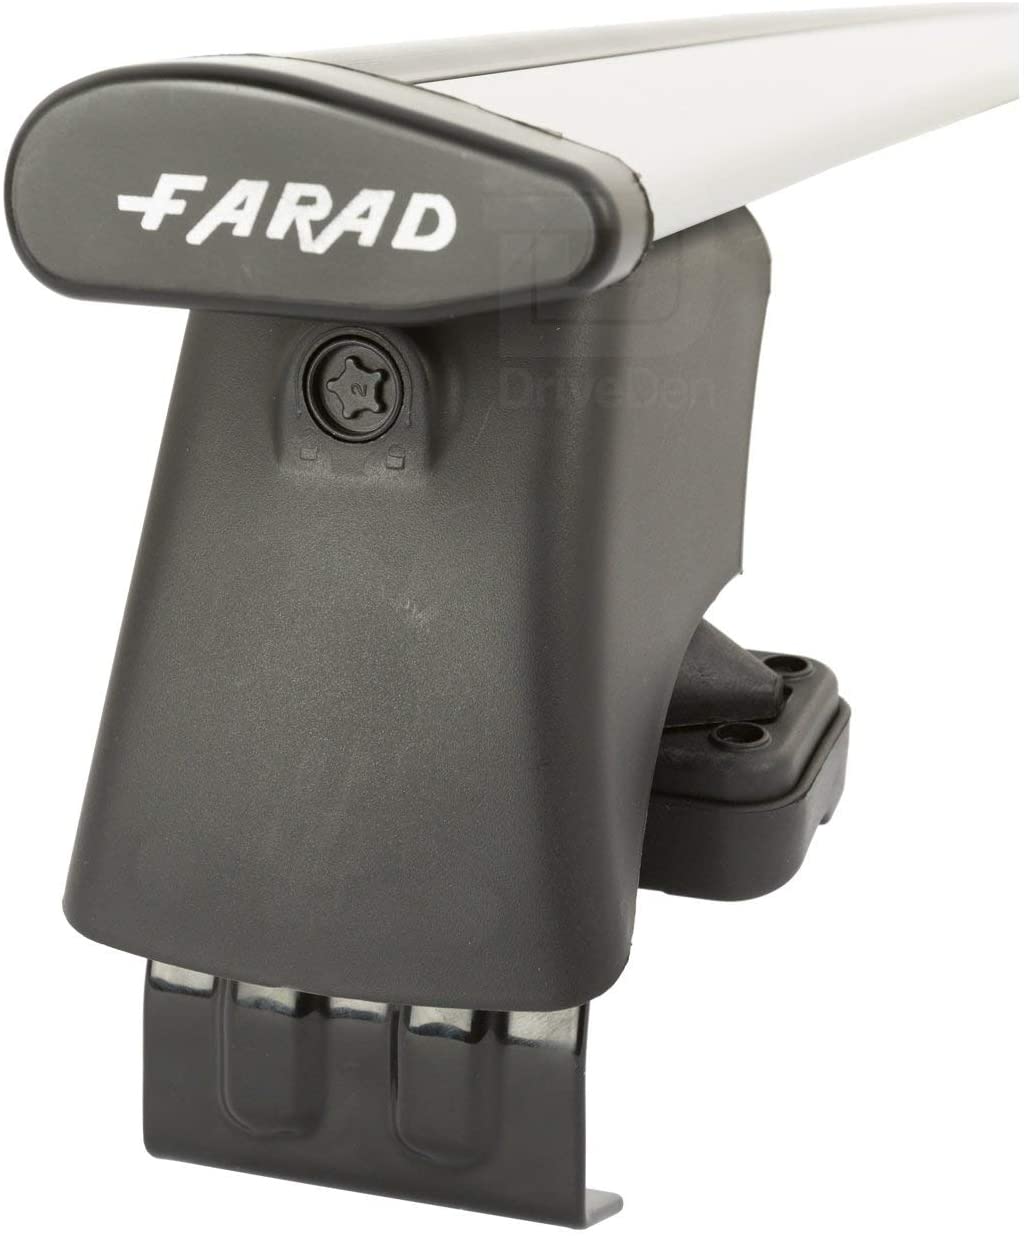 FARAD-Kit H2 per barre portatutto - Peugeot 1007 2005-2009 (senza corrimano)